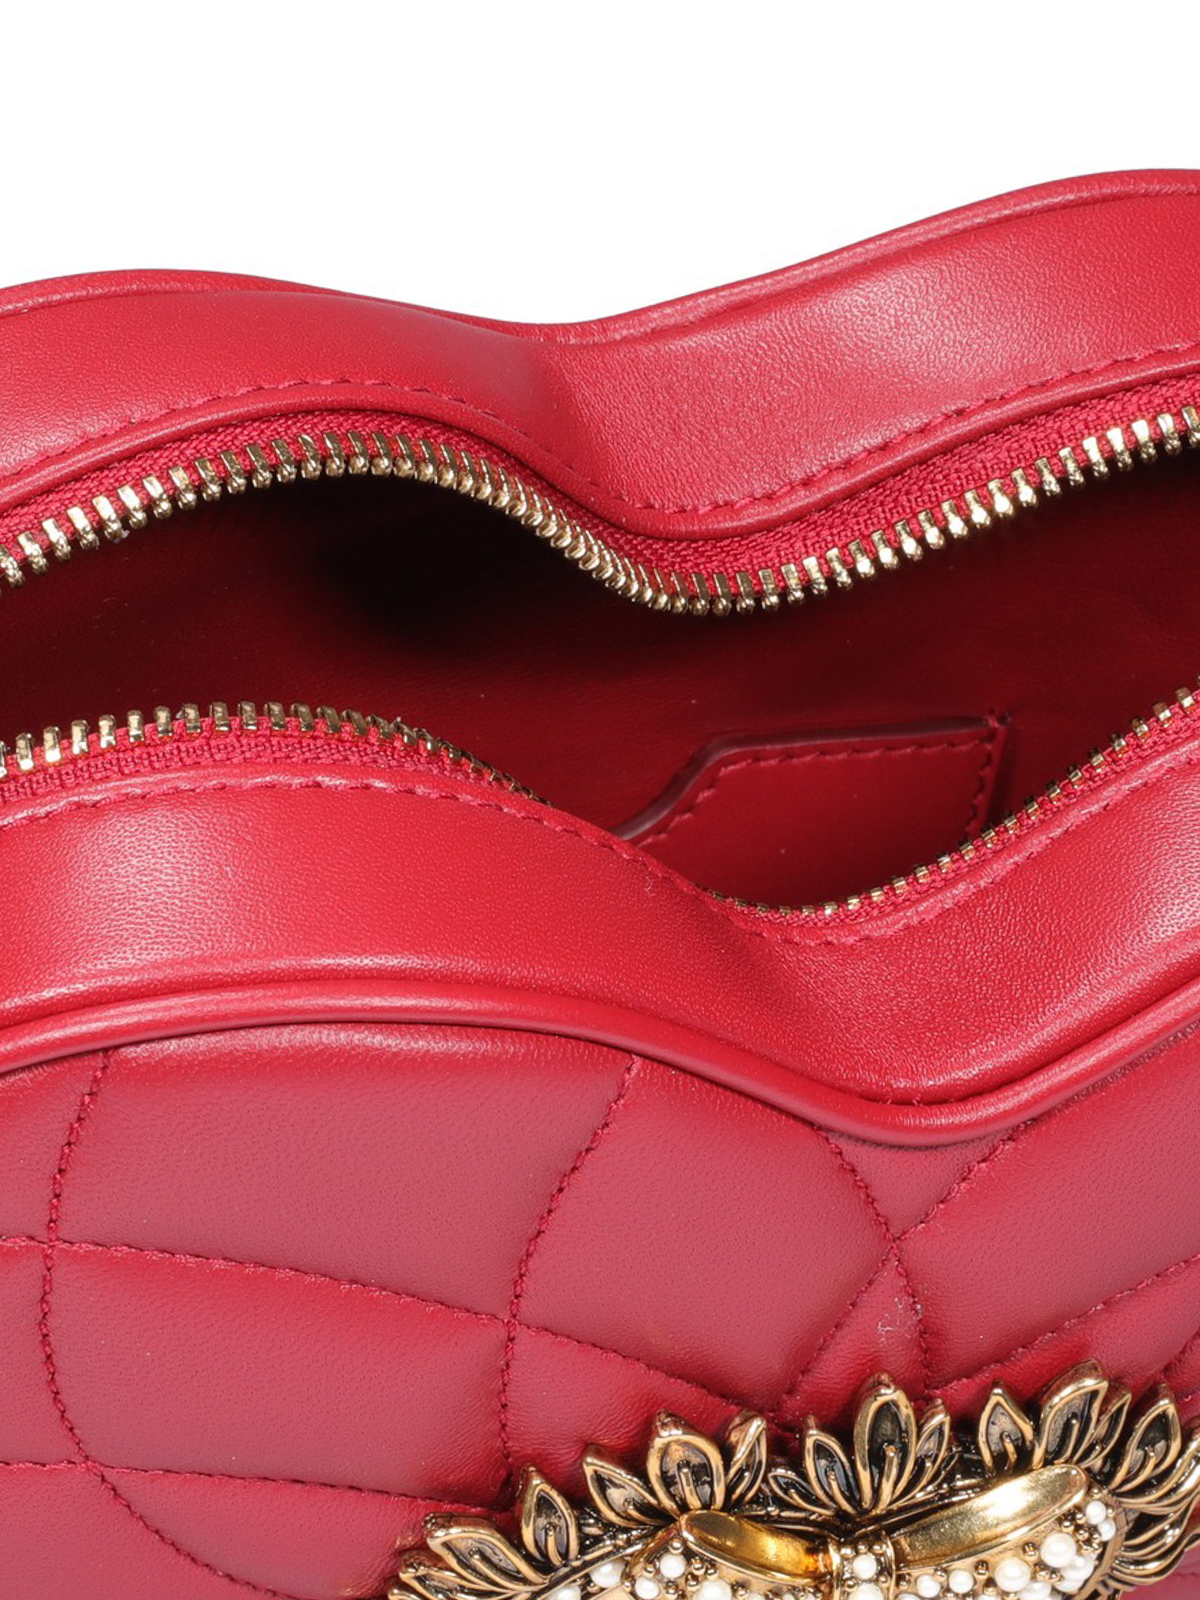 Cross body bags Dolce & Gabbana - Devotion heart-shaped leather bag -  BB6841AV96787124